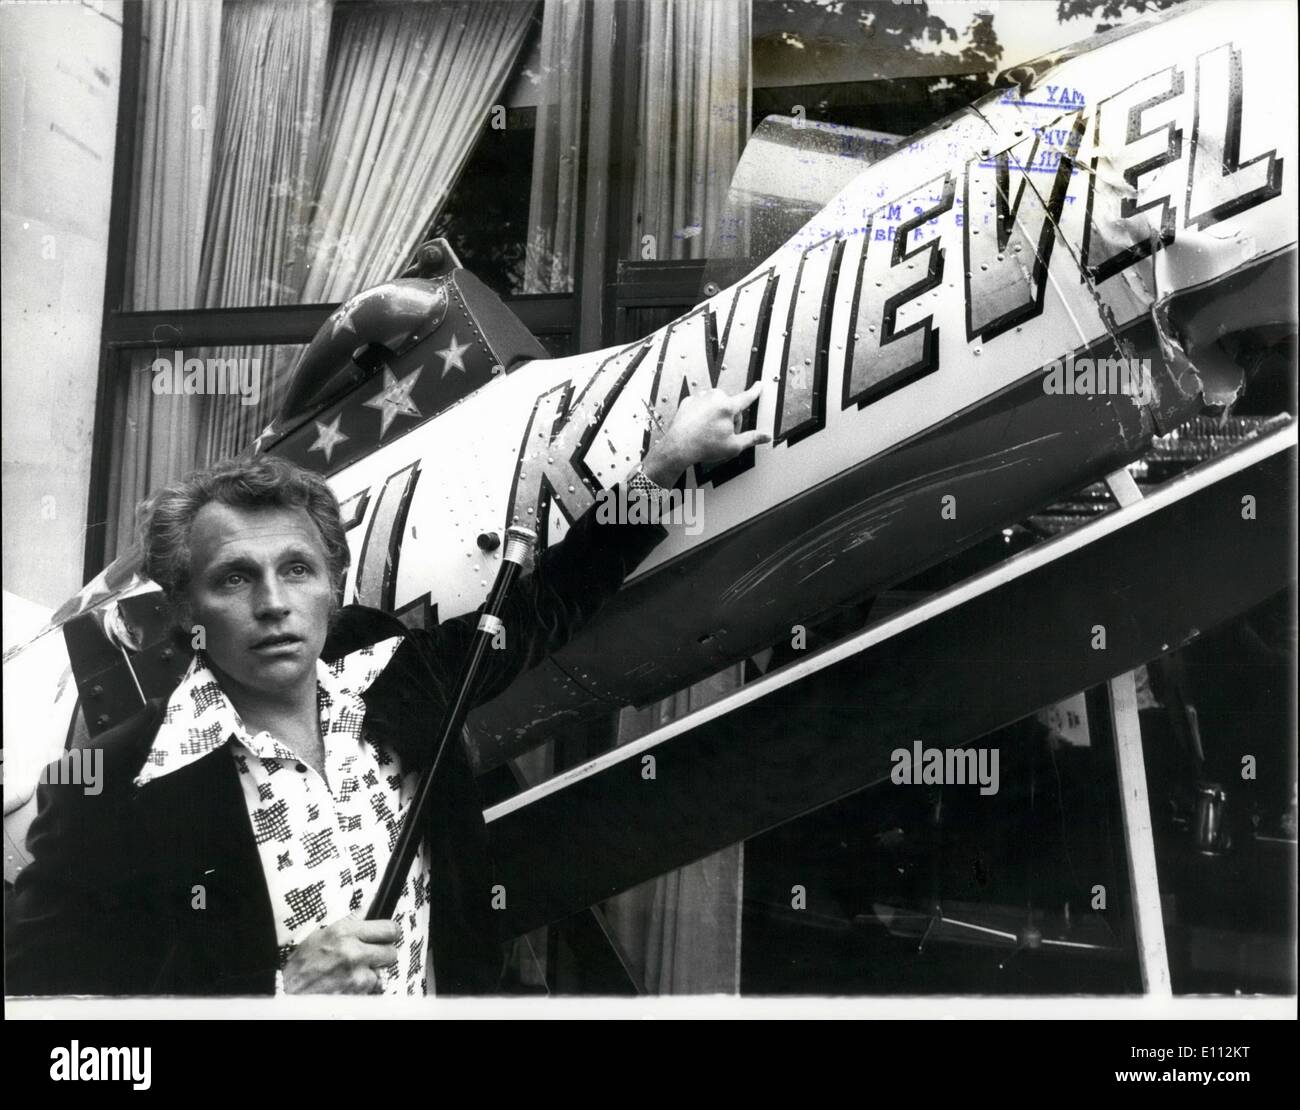 05 maggio 1975 - Evel Knievel più alta del mondo pagato Daredevil arriva in Gran Bretagna: Evel Knievel, il 35-anno-vecchio milionario dalle pendici del Montana e riconosciuta come la più alta del mondo pagato daredevil, è arrivato a Londra per iniziare un tour della Gran Bretagna. L'uomo doppiato ''Re della vita riskers'' da milioni di spettatori che hanno guardato la sua audacia razzo-assisted salto a Idaho giant Snake River Canyon, è diventato una leggenda in tutta l'America per spettacolari motor-cycle salti. Evel il primo spettacolo ill svolgerà al Wembley Stadium il lunedì di Pentecoste, 26 maggio Foto Stock